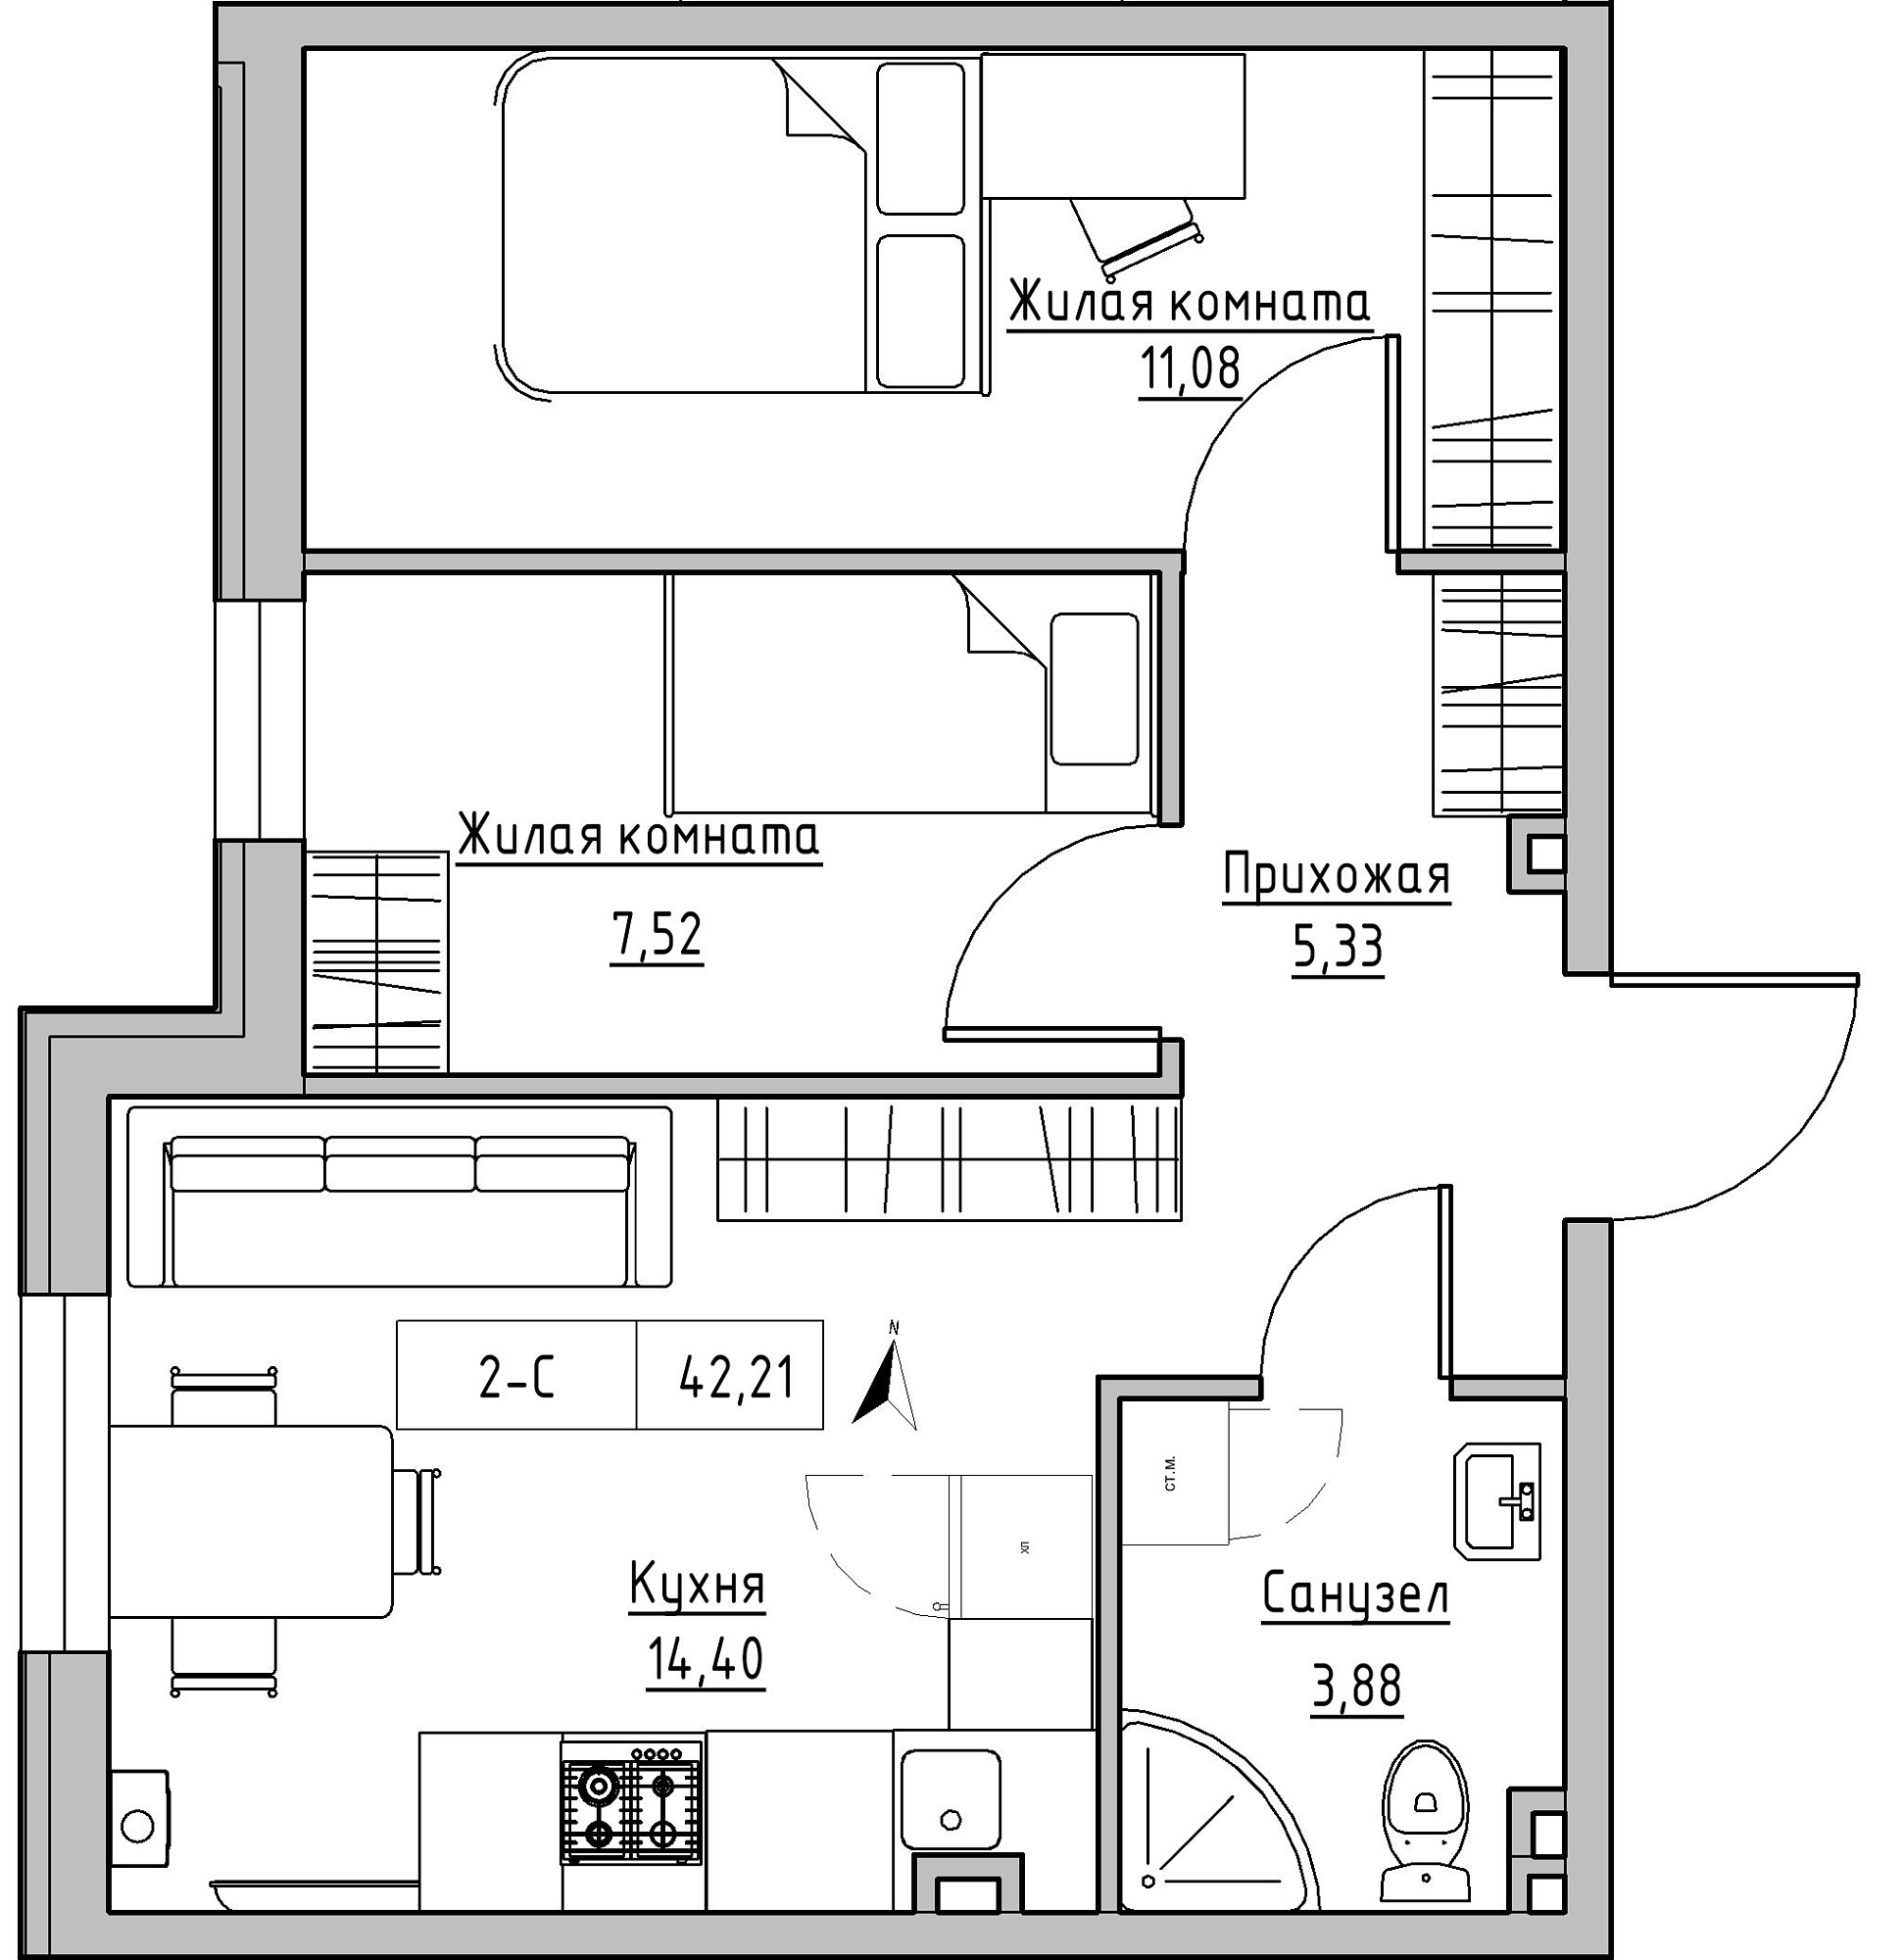 Планировка 2-к квартира площей 42.21м2, KS-024-01/0010.